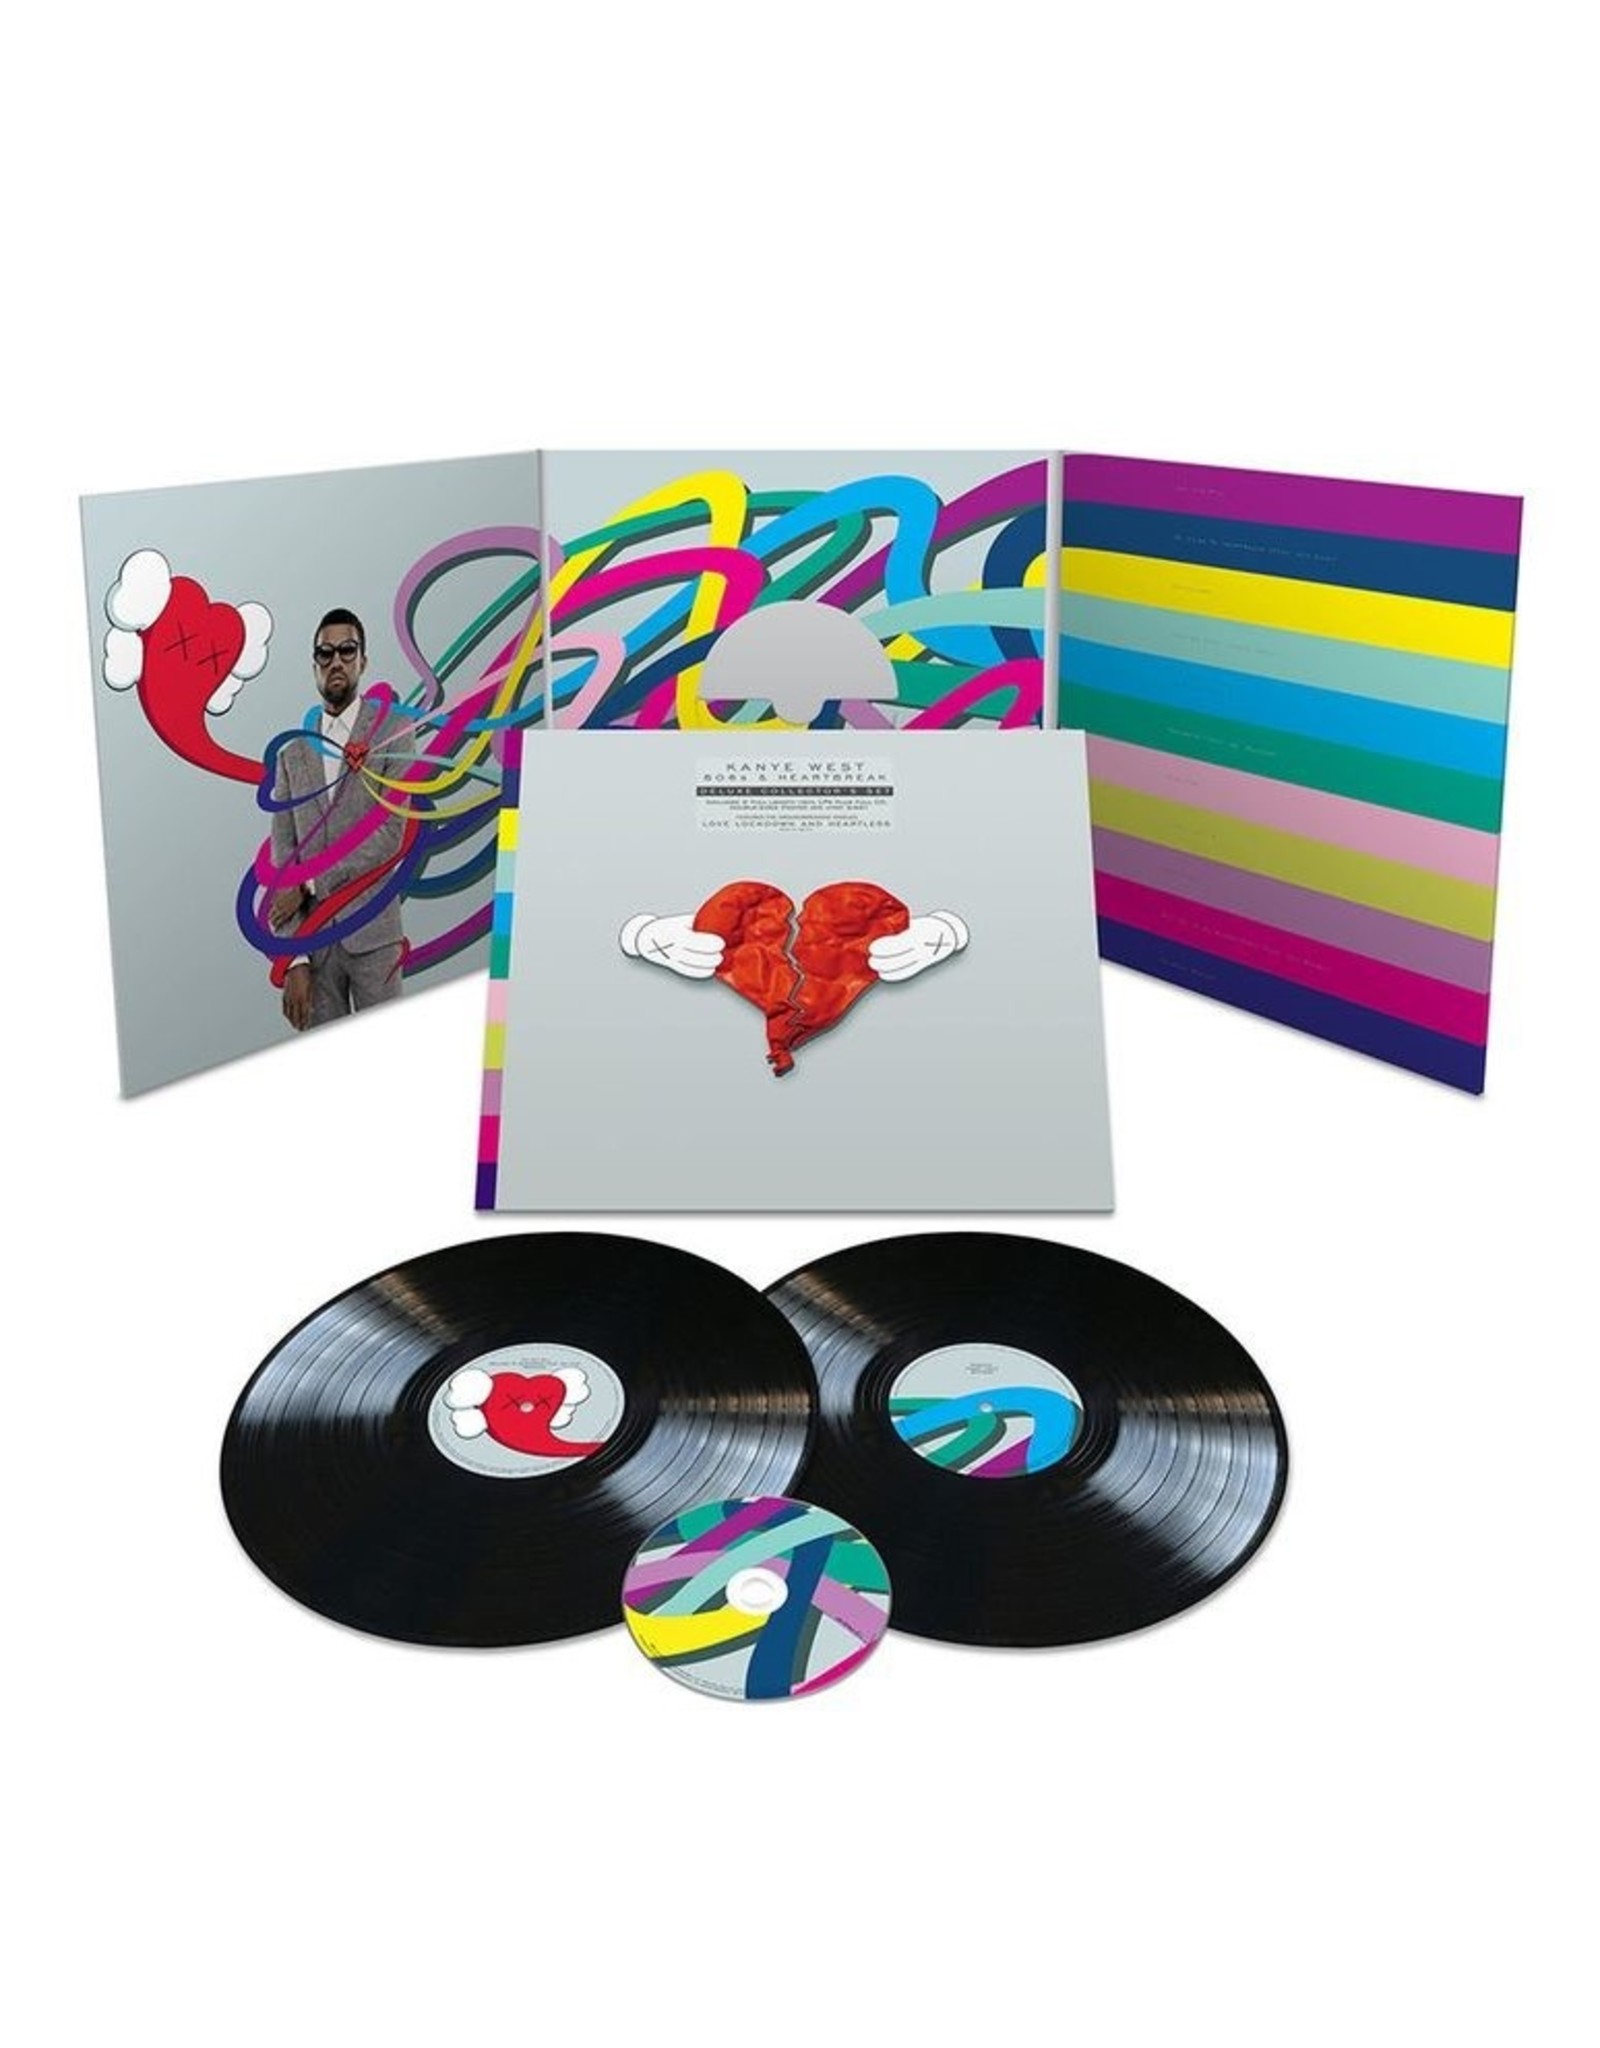 Kanye West - 808s & Heartbreak (Deluxe Collector's Set)